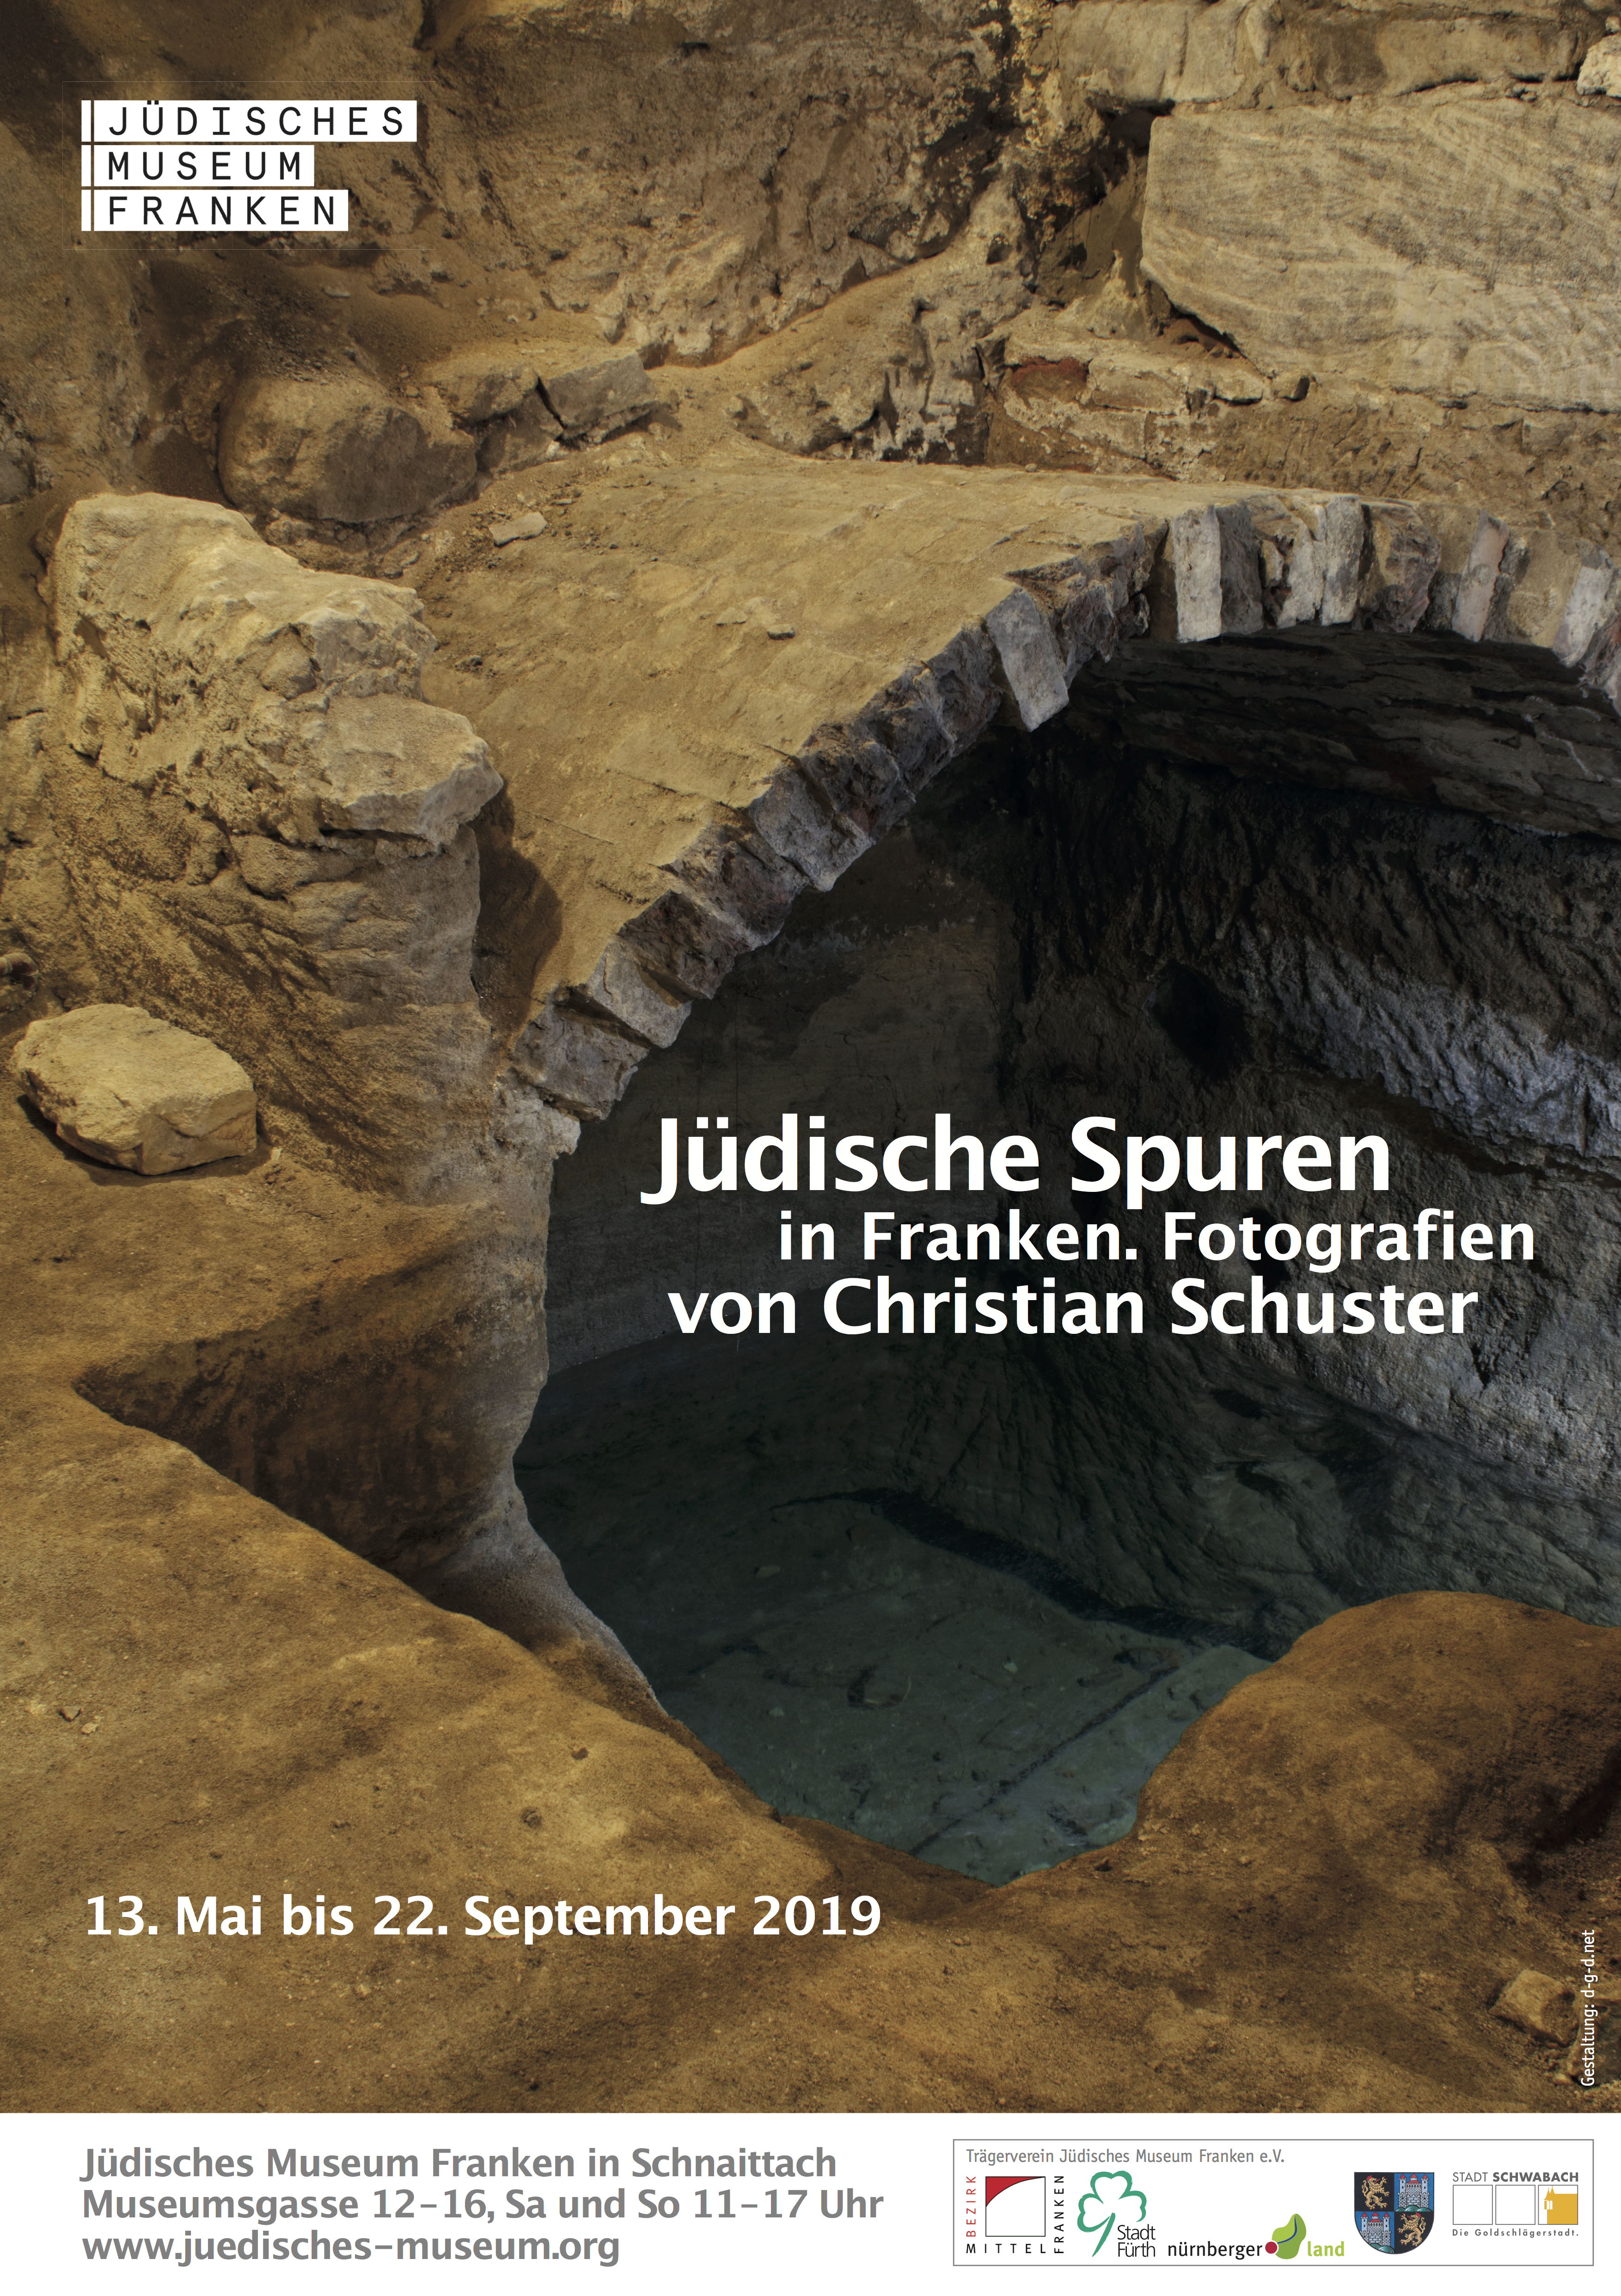 Plakatmotiv zur Wechselausstellung "Jüdische Spuren in Franken - Fotografien von Christian Schuster" im JMF Schnaittach.